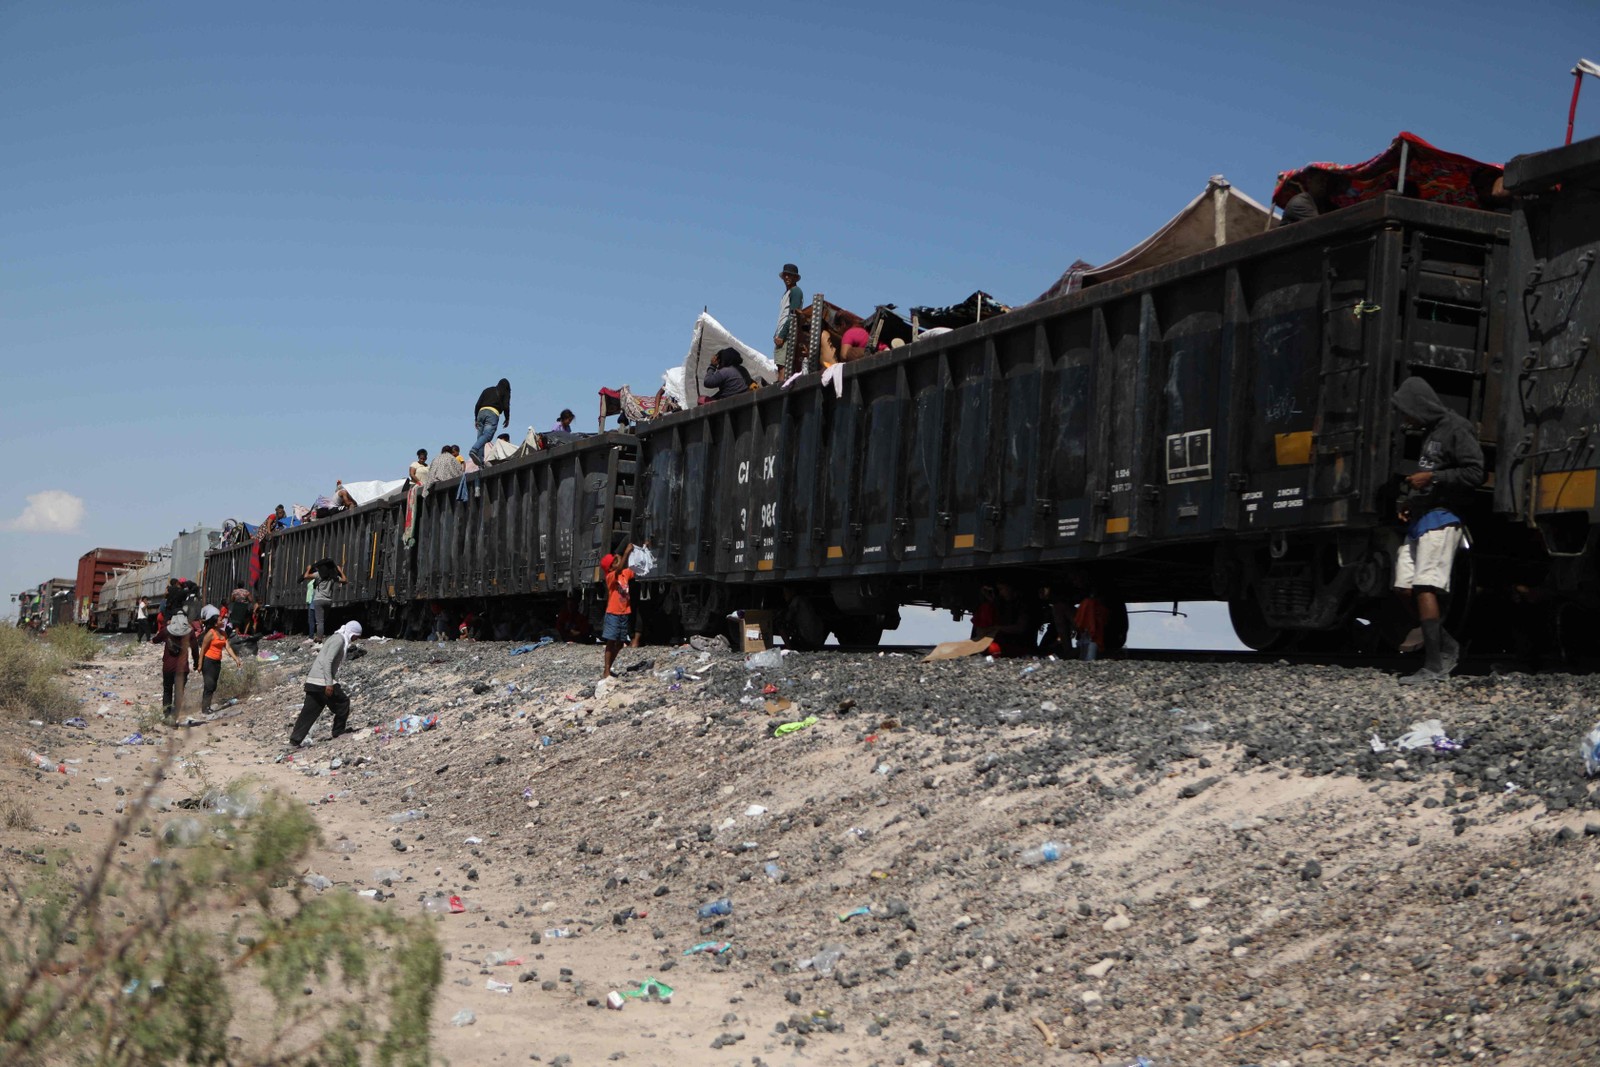 Migrantes, principalmente da Venezuela, permanecem retidas depois que o trem de mercadorias em que viajavam para Ciudad Juarez parou no deserto do município de Ahumada, estado de Chihuahua, México — Foto: HERIKA MARTINEZ/AFP